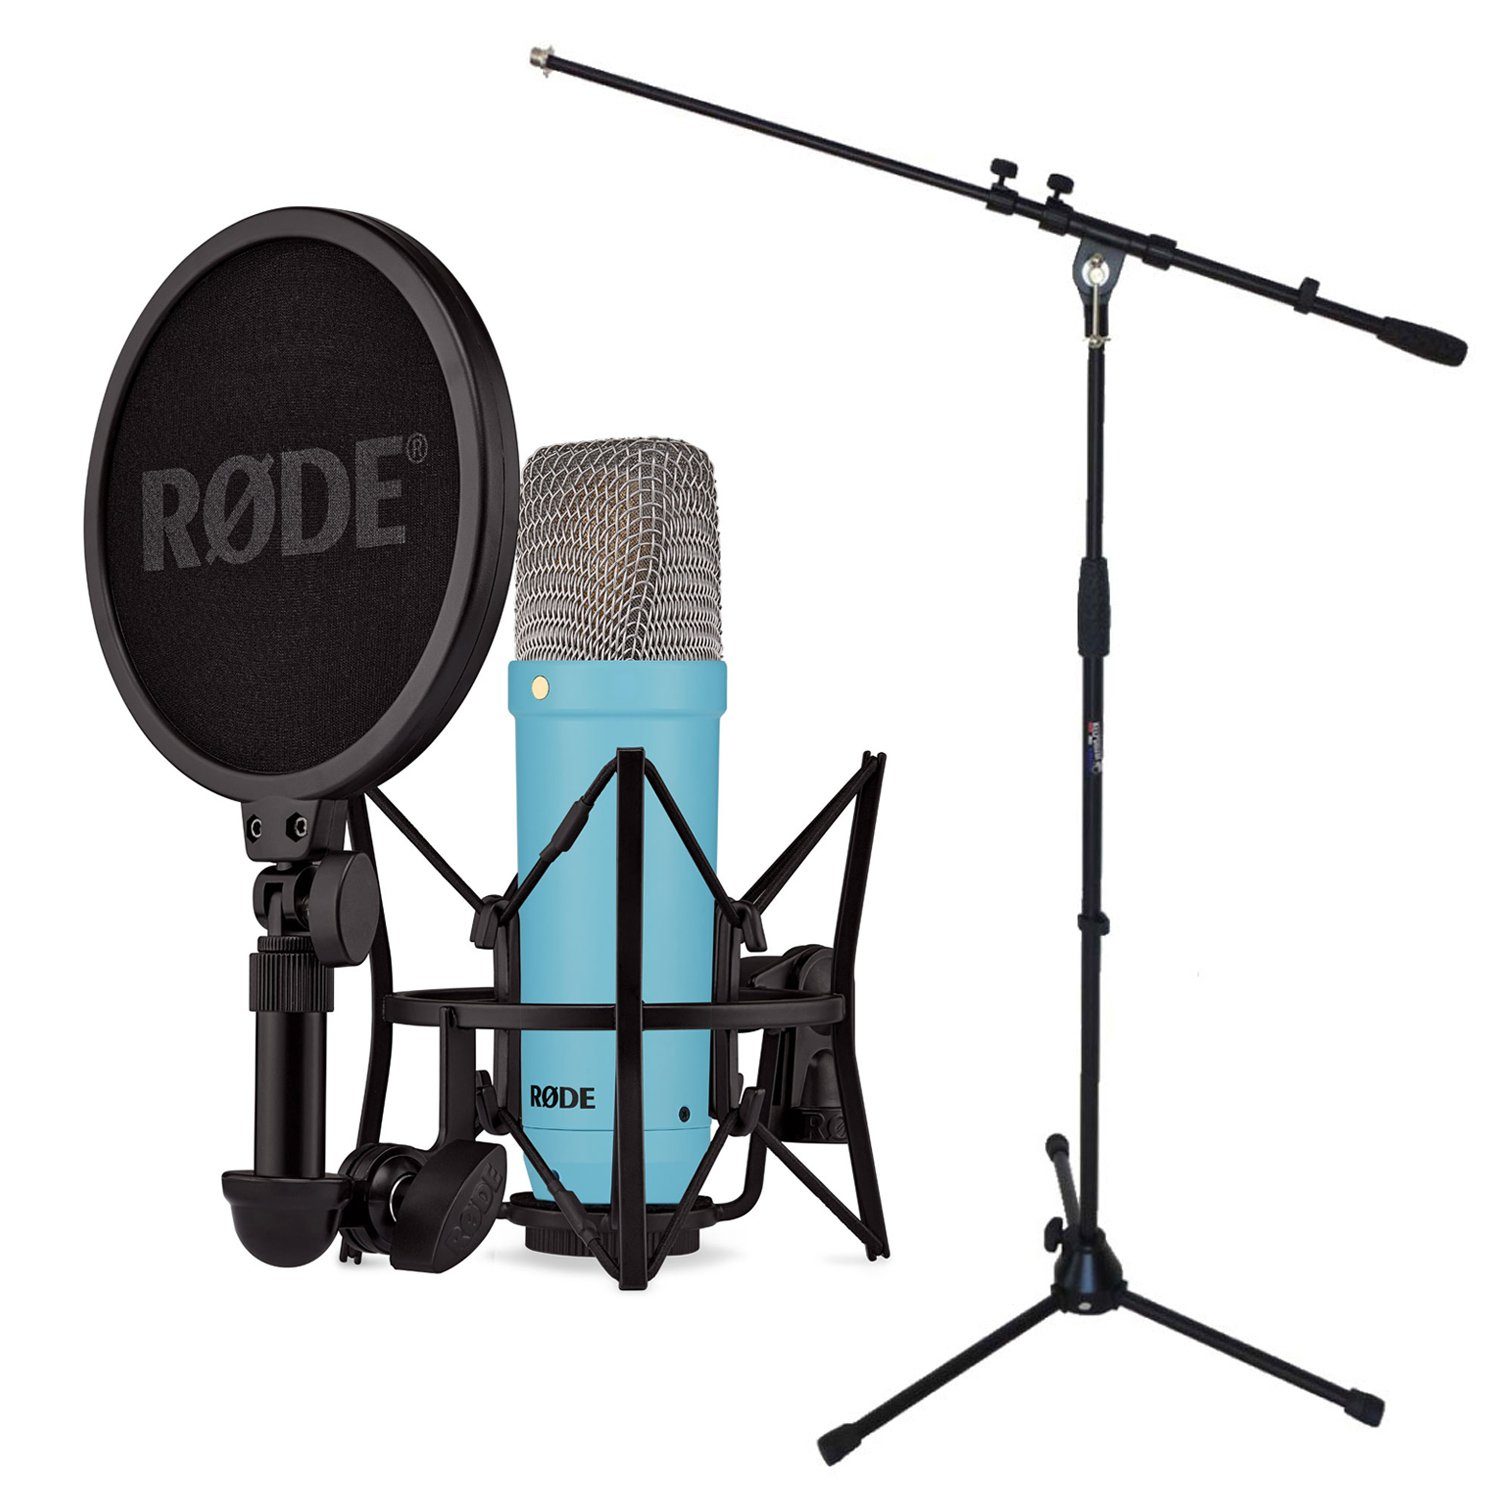 RØDE Mikrofon NT1 Signature Blue (Studio-Mikrofon Blau), mit Mikrofonständer